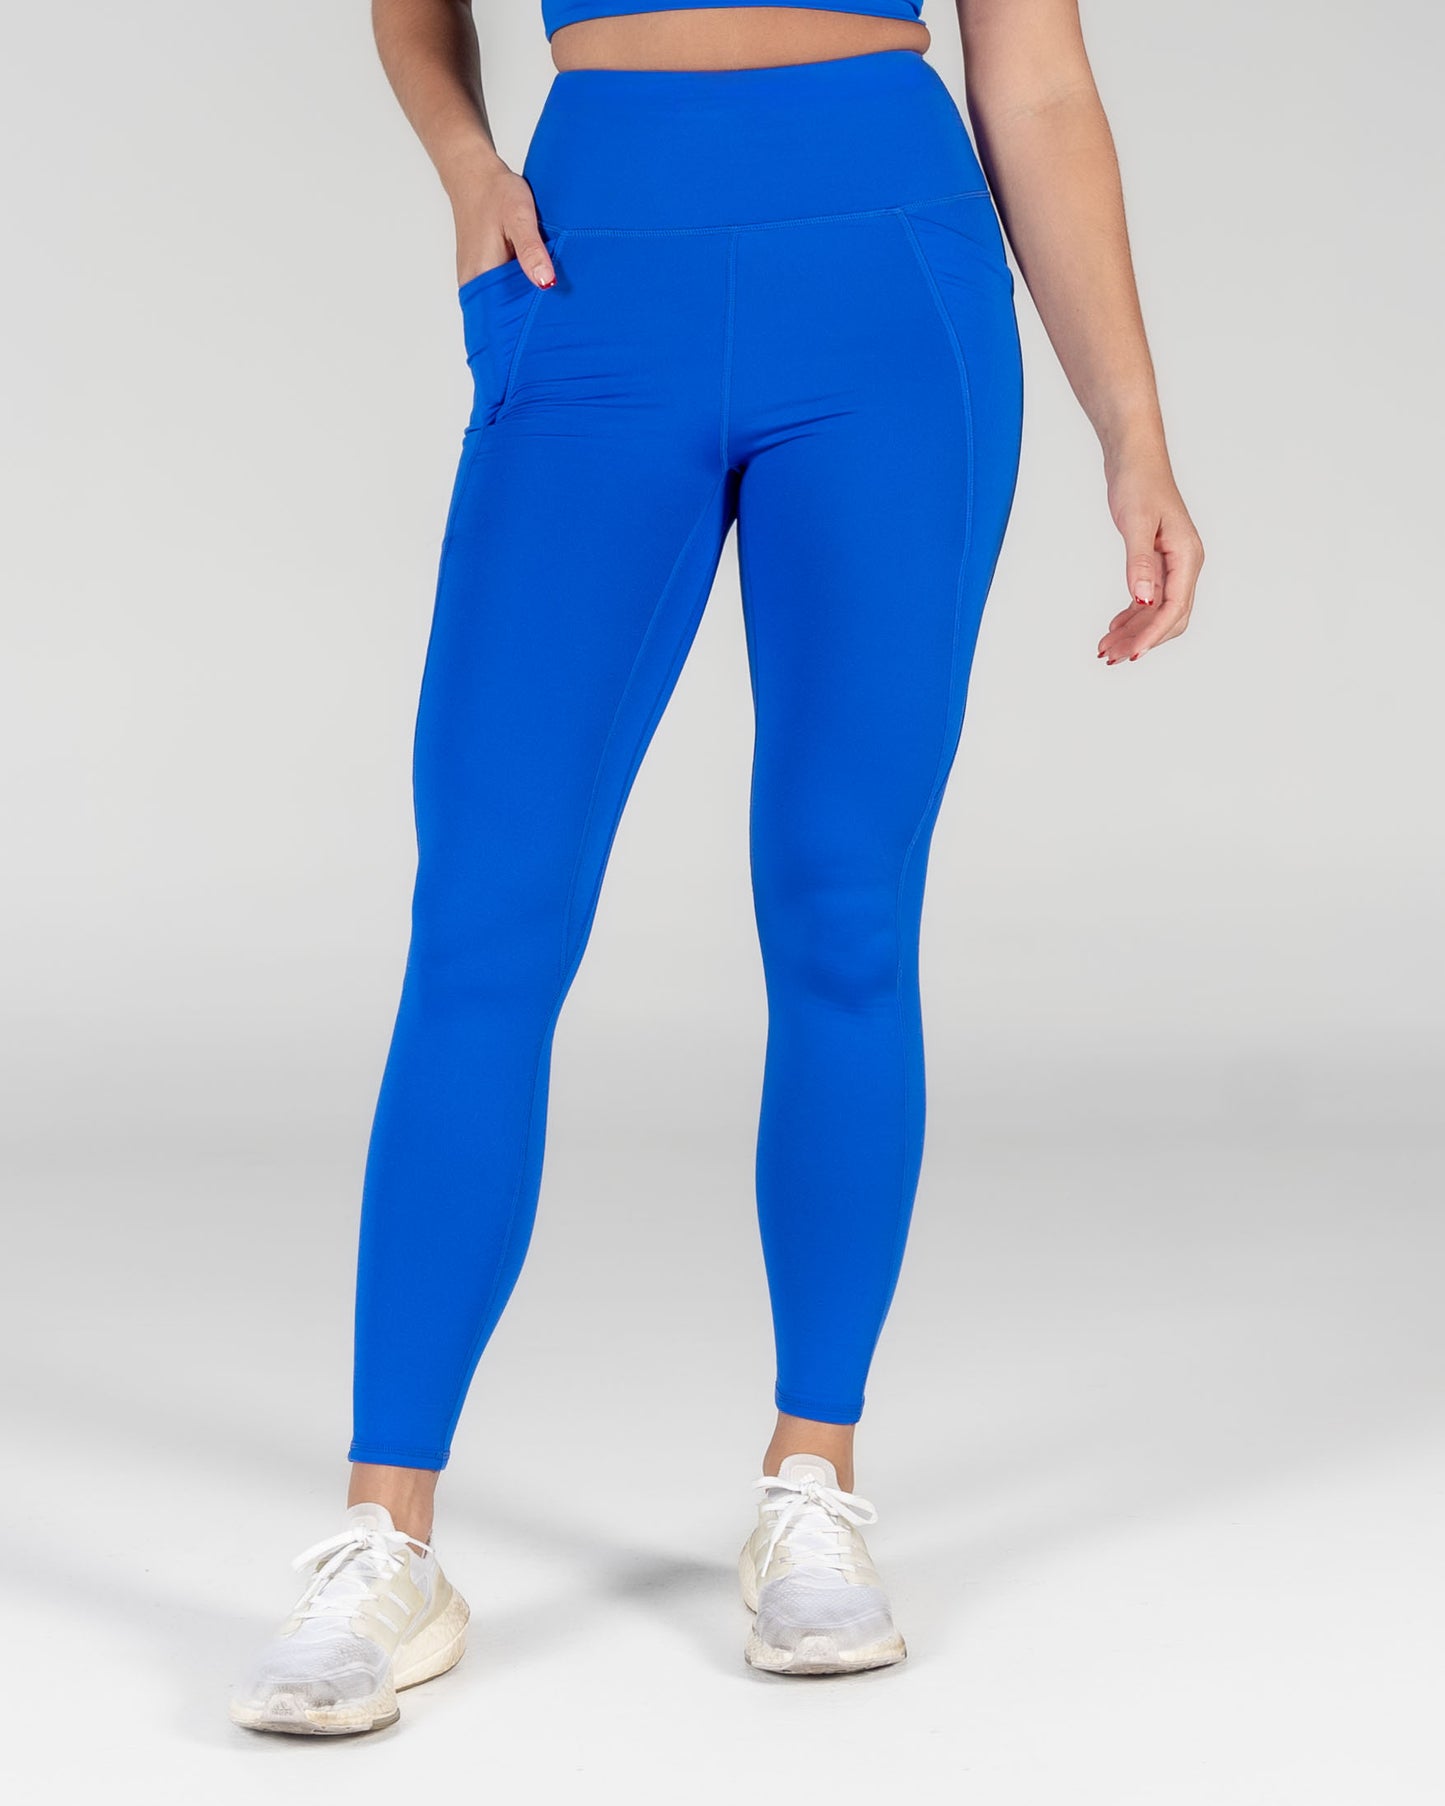 Mottled antique Blue leggings for women - Dim Sport